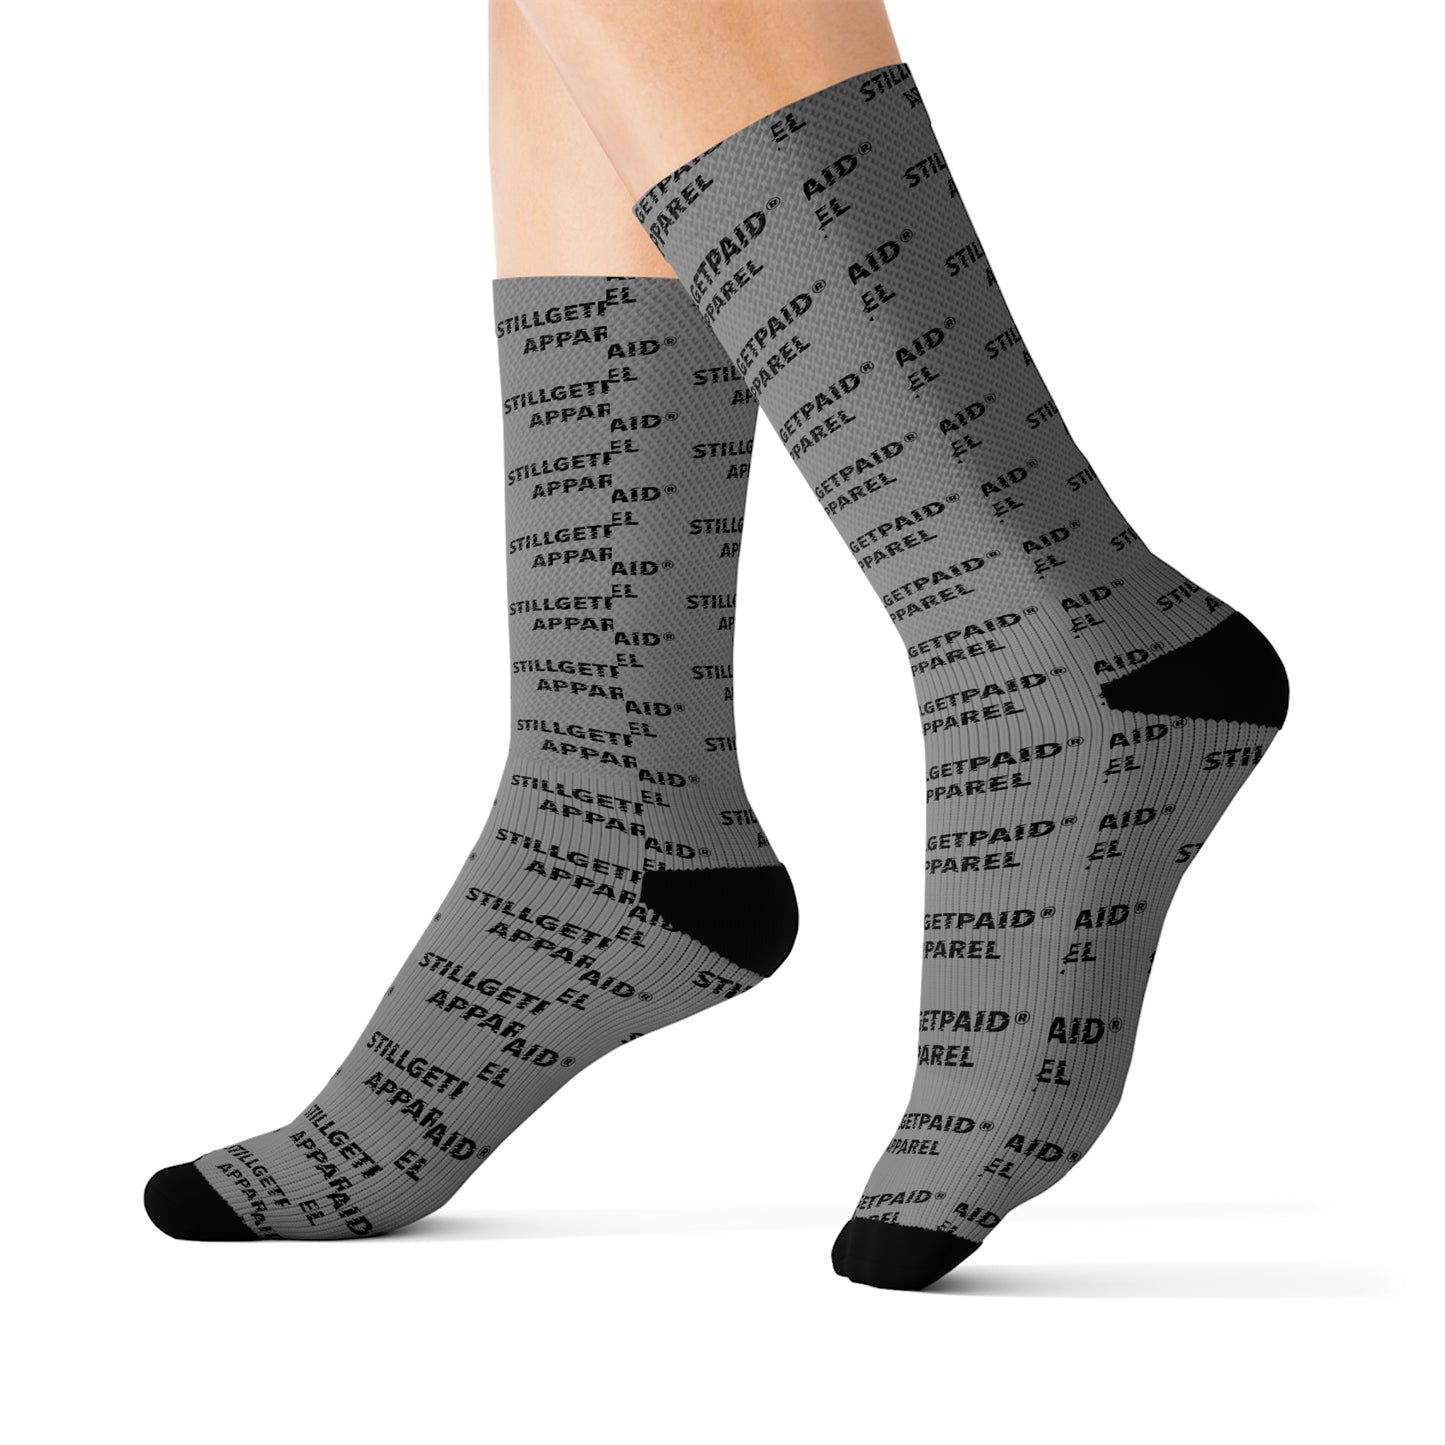 STILLGETPAID APPAREL STAMP Sublimation Socks